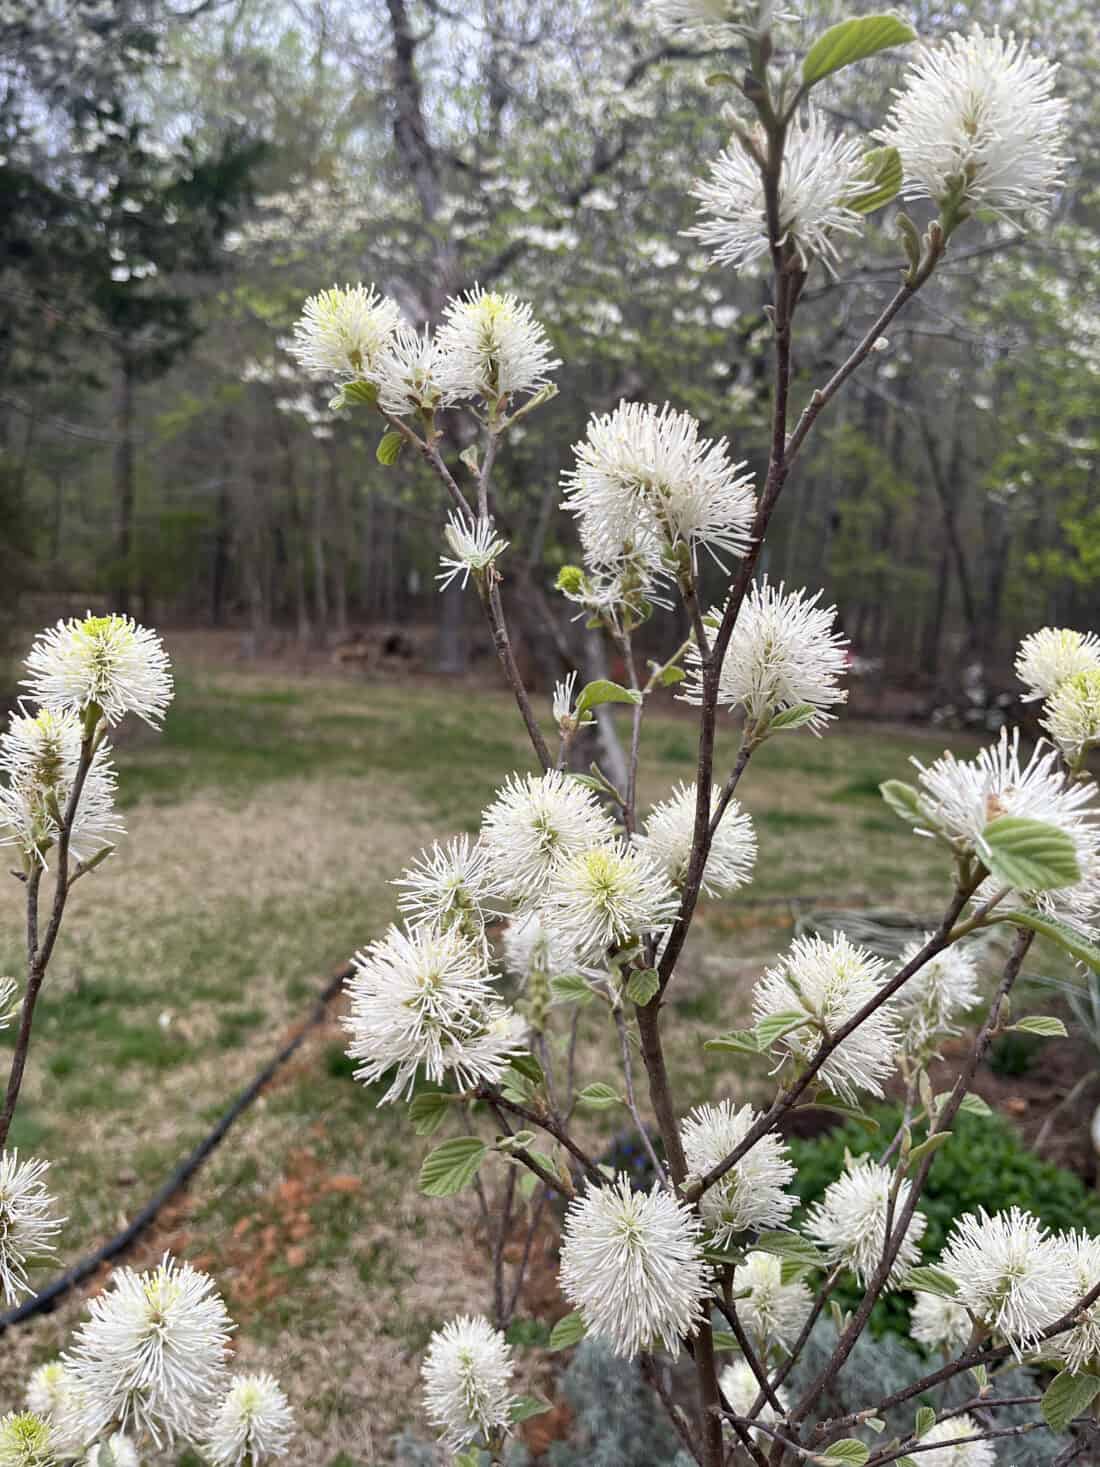 fothergilla - spikes of fragrant white flowers